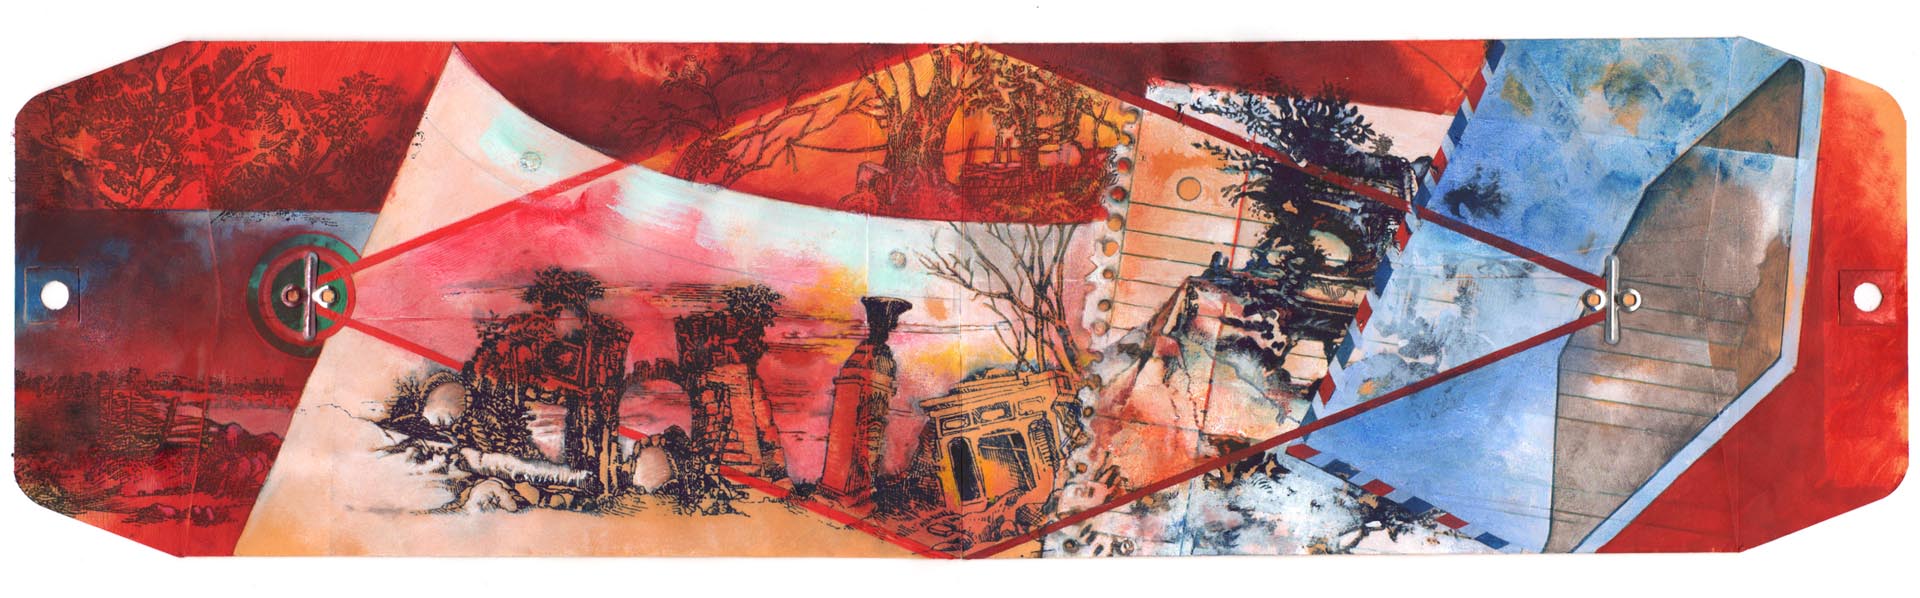 Ellen Wiener, Red Rope, 6 x 22”, Oil on envelopes, 2012